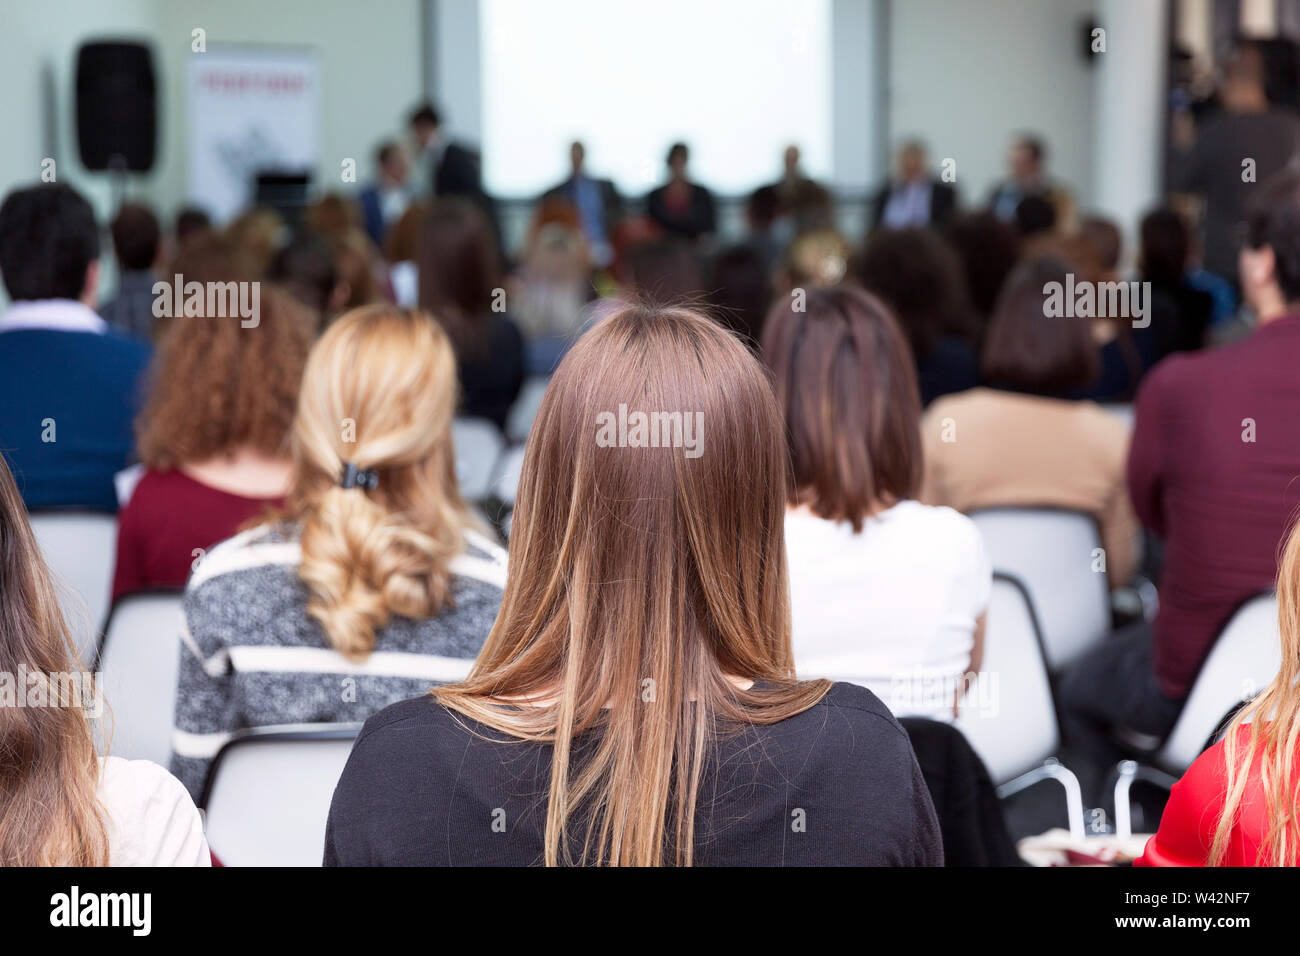 Les participants à la conférence d'affaires ou professionnel, assis à écouter les orateurs. Banque D'Images